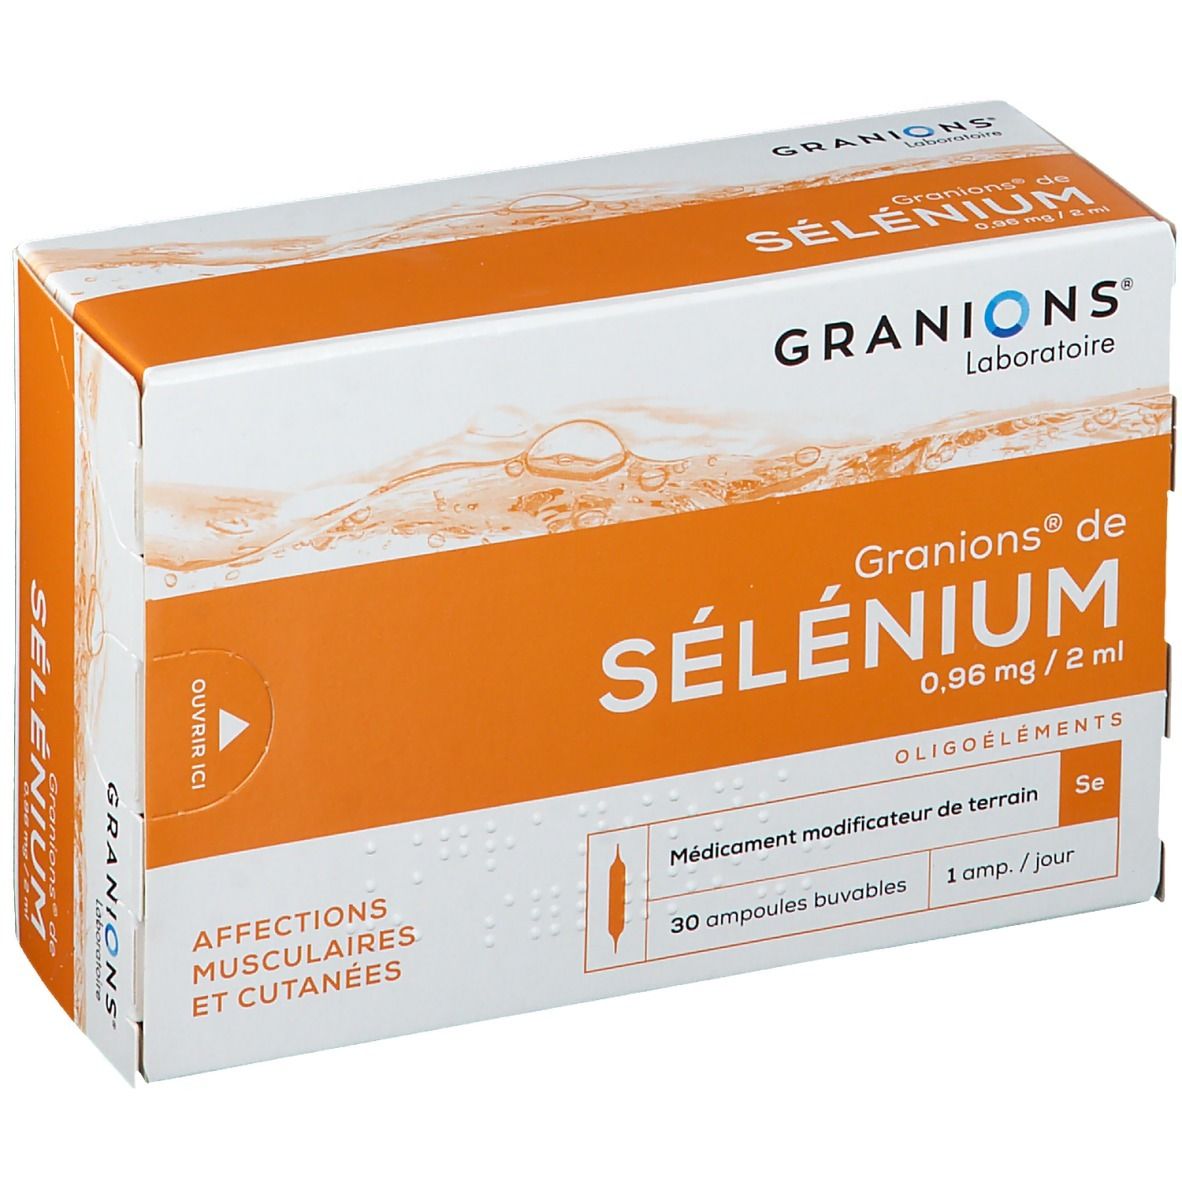 Granions® de Selenium 0,96 mg/2 mL